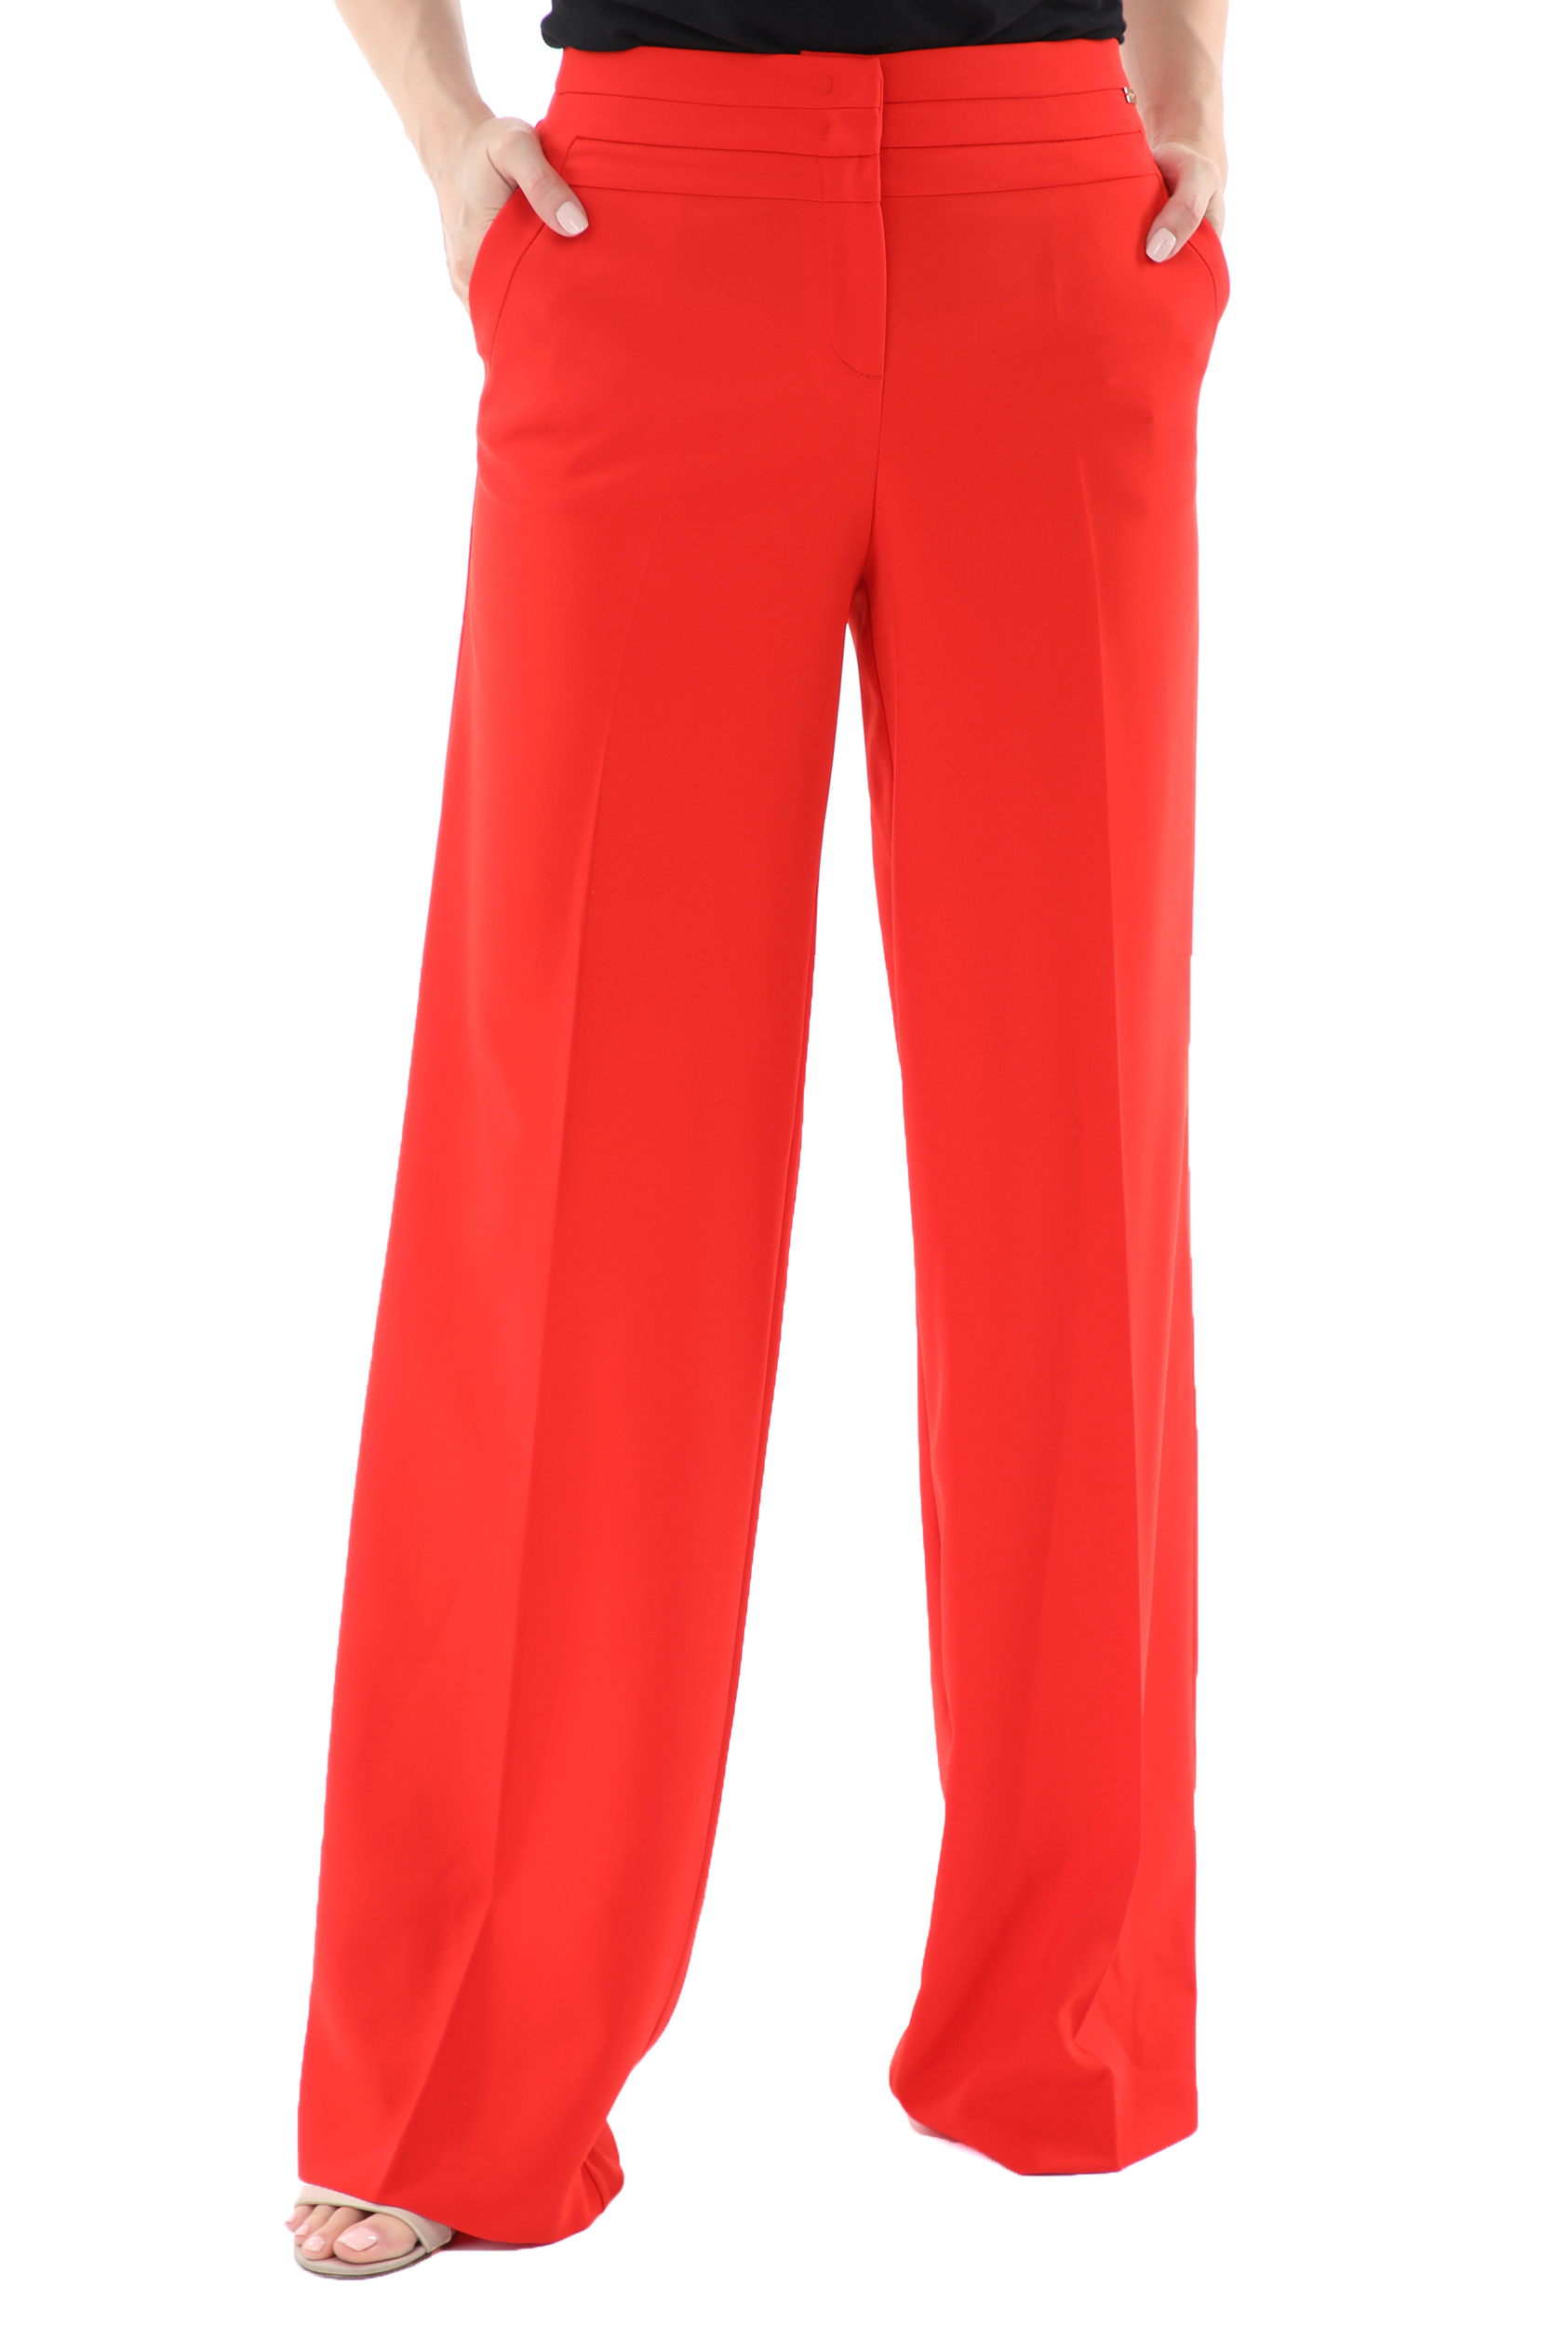 Γυναικεία/Ρούχα/Παντελόνια/Παντελόνες NENETTE - Γυναικεία παντελόνα NENETTE PANT PALAZZO TECNICO FLUIDO κόκκινη